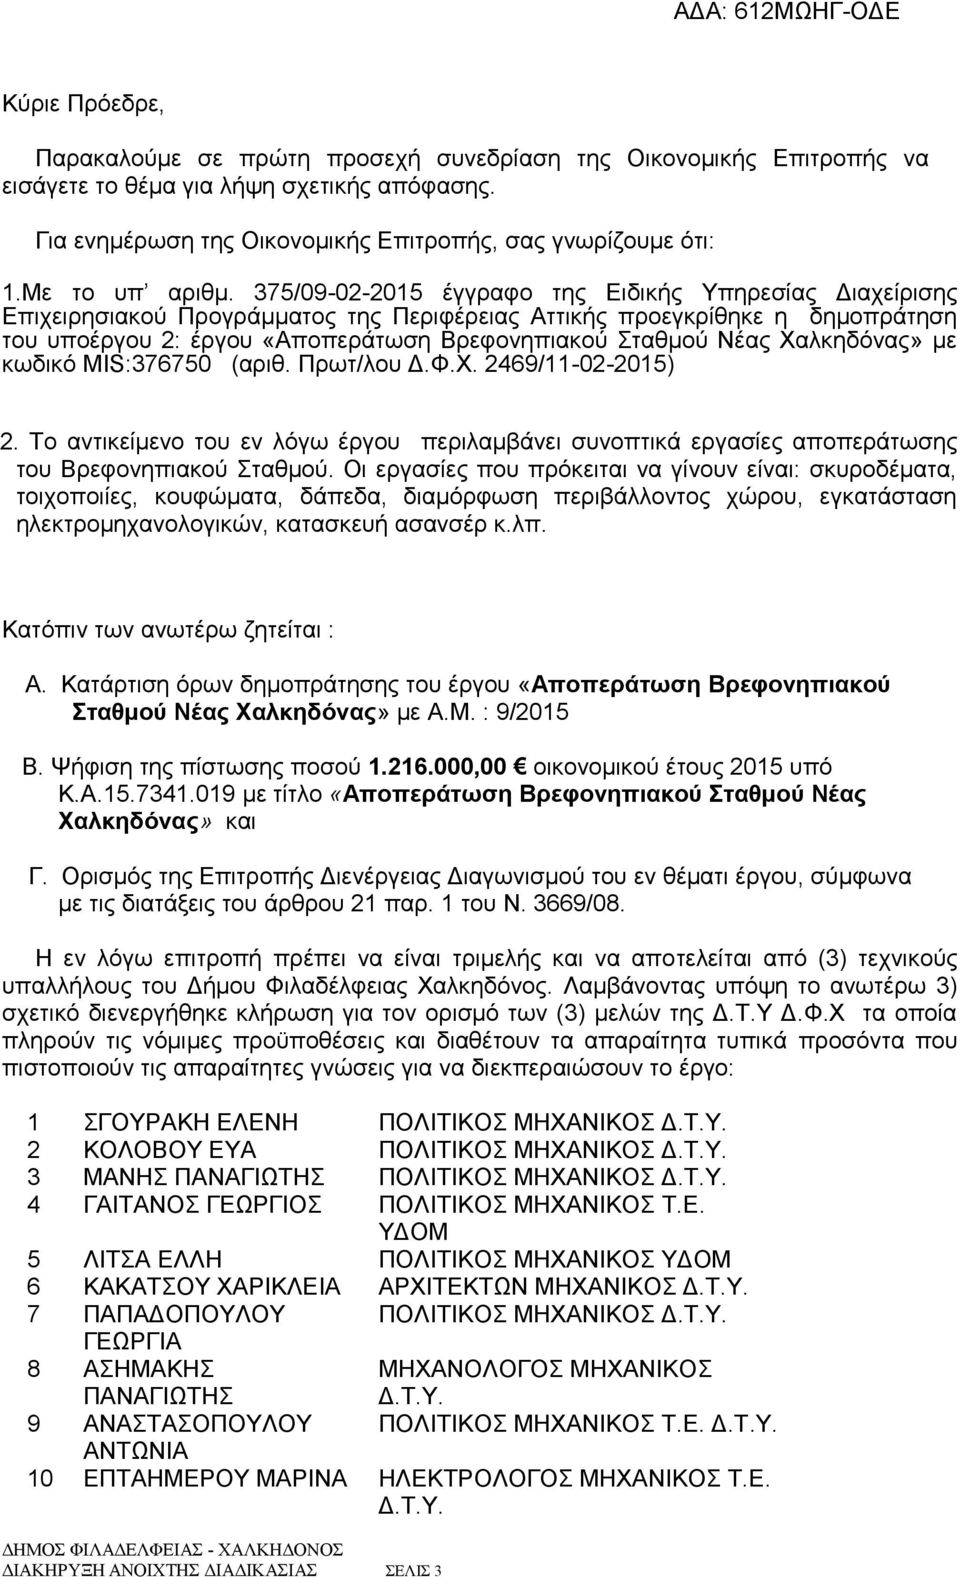 375/09-02-2015 έγγραφο της Ειδικής Υπηρεσίας Διαχείρισης Επιχειρησιακού Προγράμματος της Περιφέρειας Αττικής προεγκρίθηκε η δημοπράτηση του υποέργου 2: έργου «Αποπεράτωση Βρεφονηπιακού Σταθμού Νέας